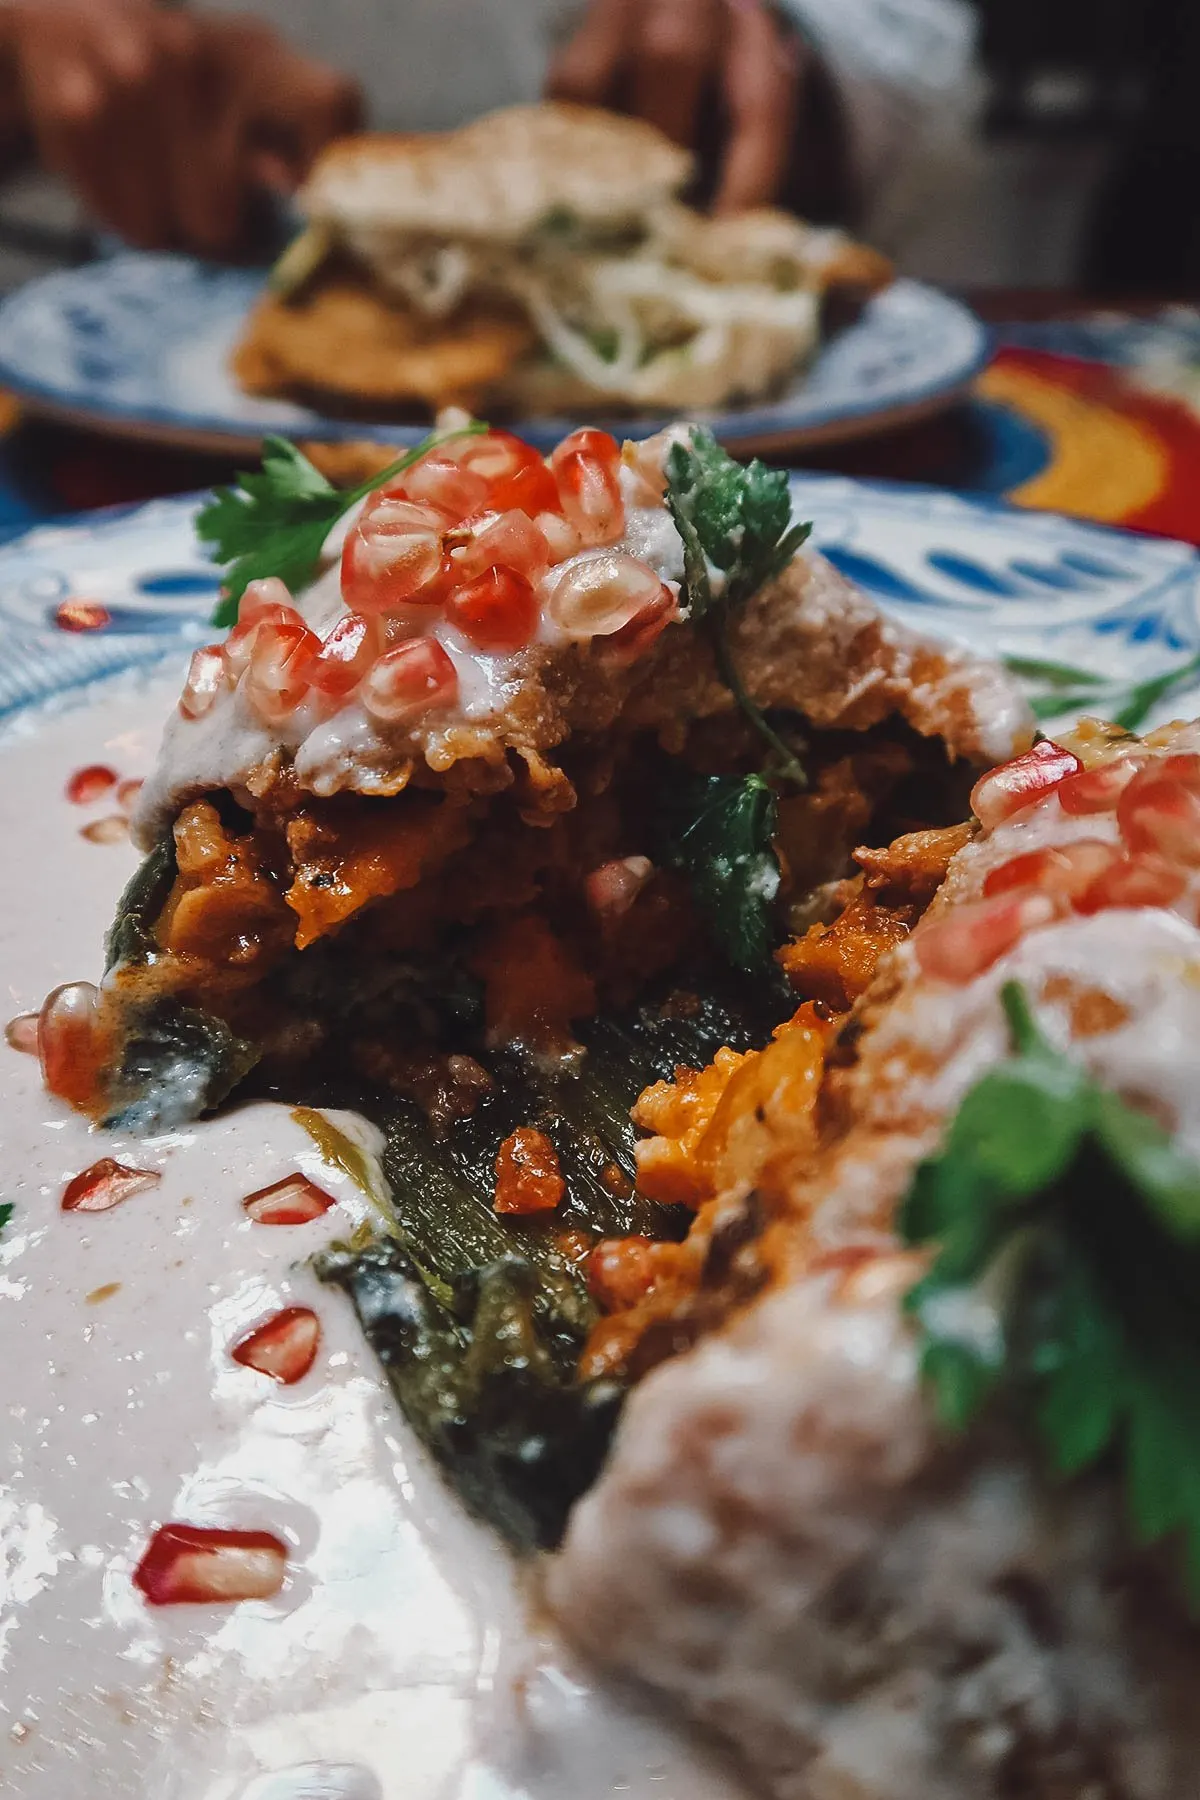 Inside the chile en nogada